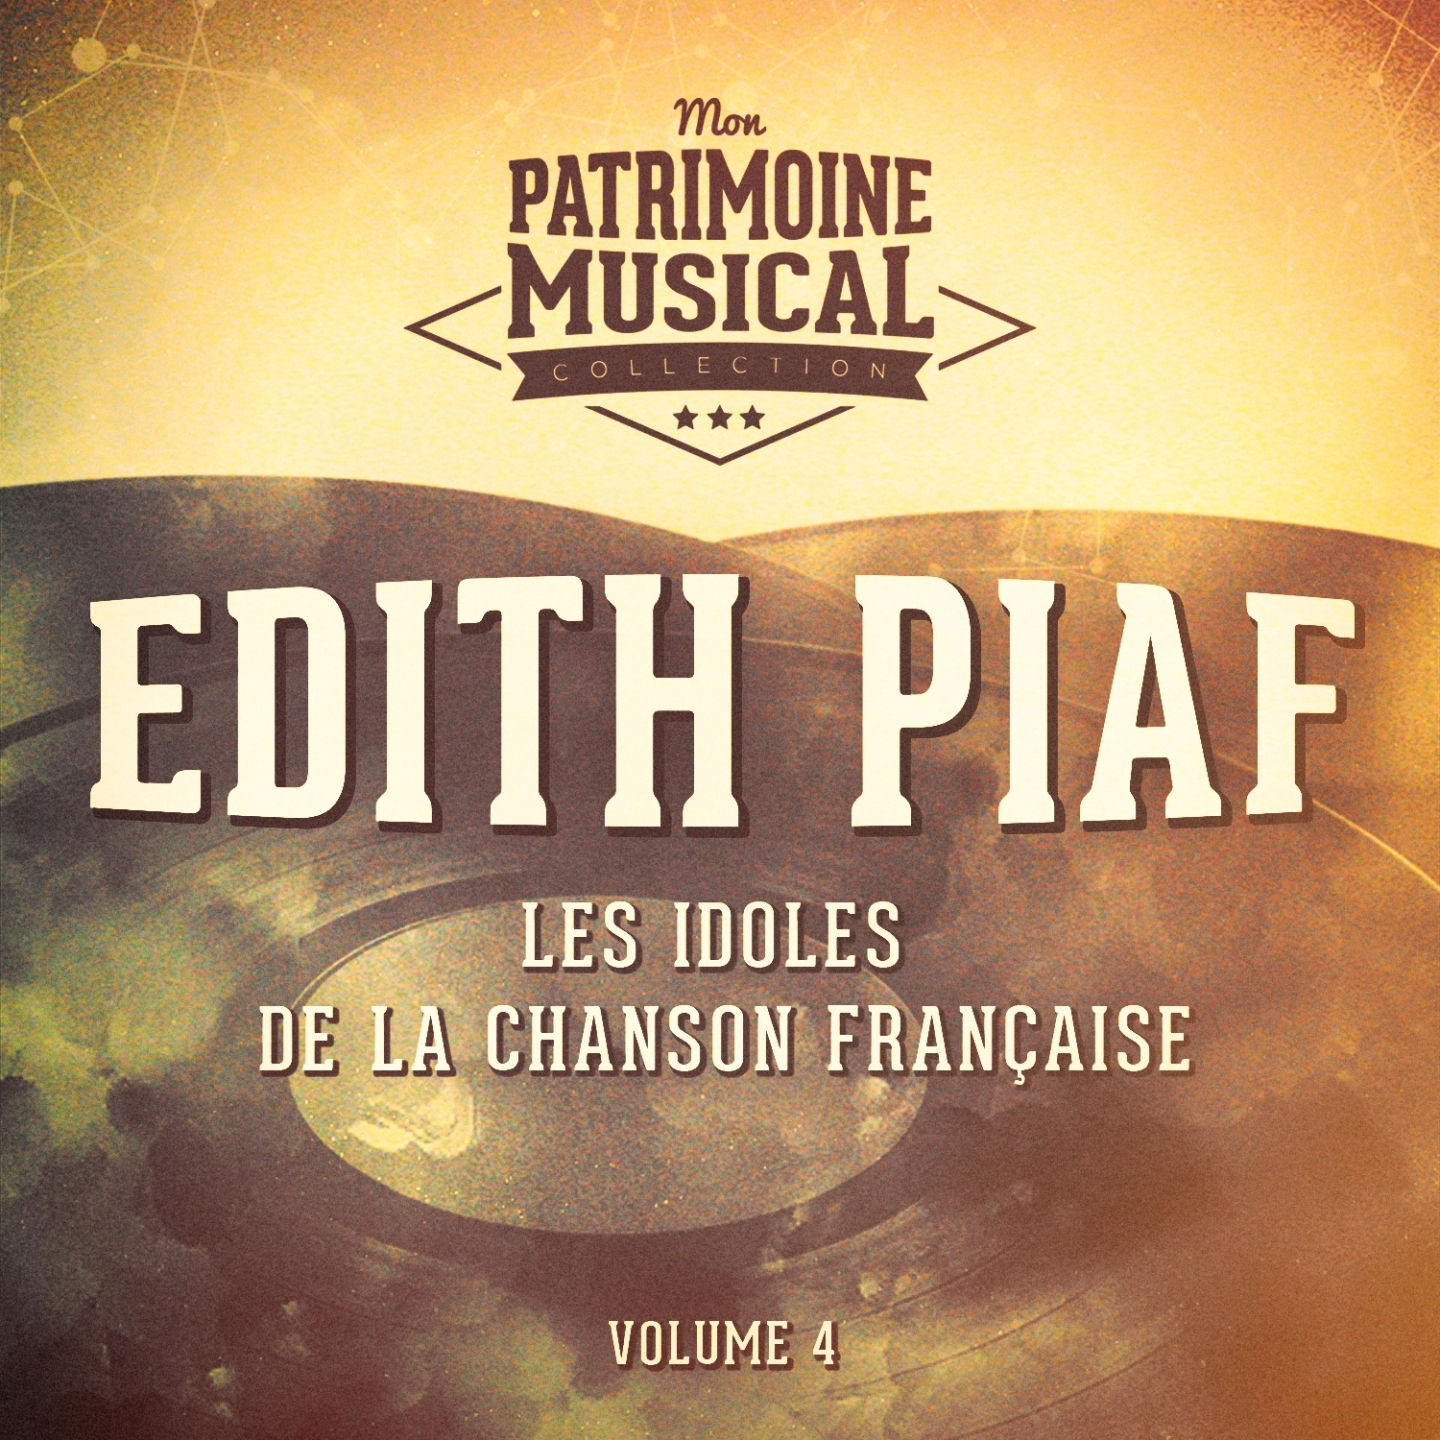 Les idoles de la chanson fran aise : Edith Piaf, Vol. 4